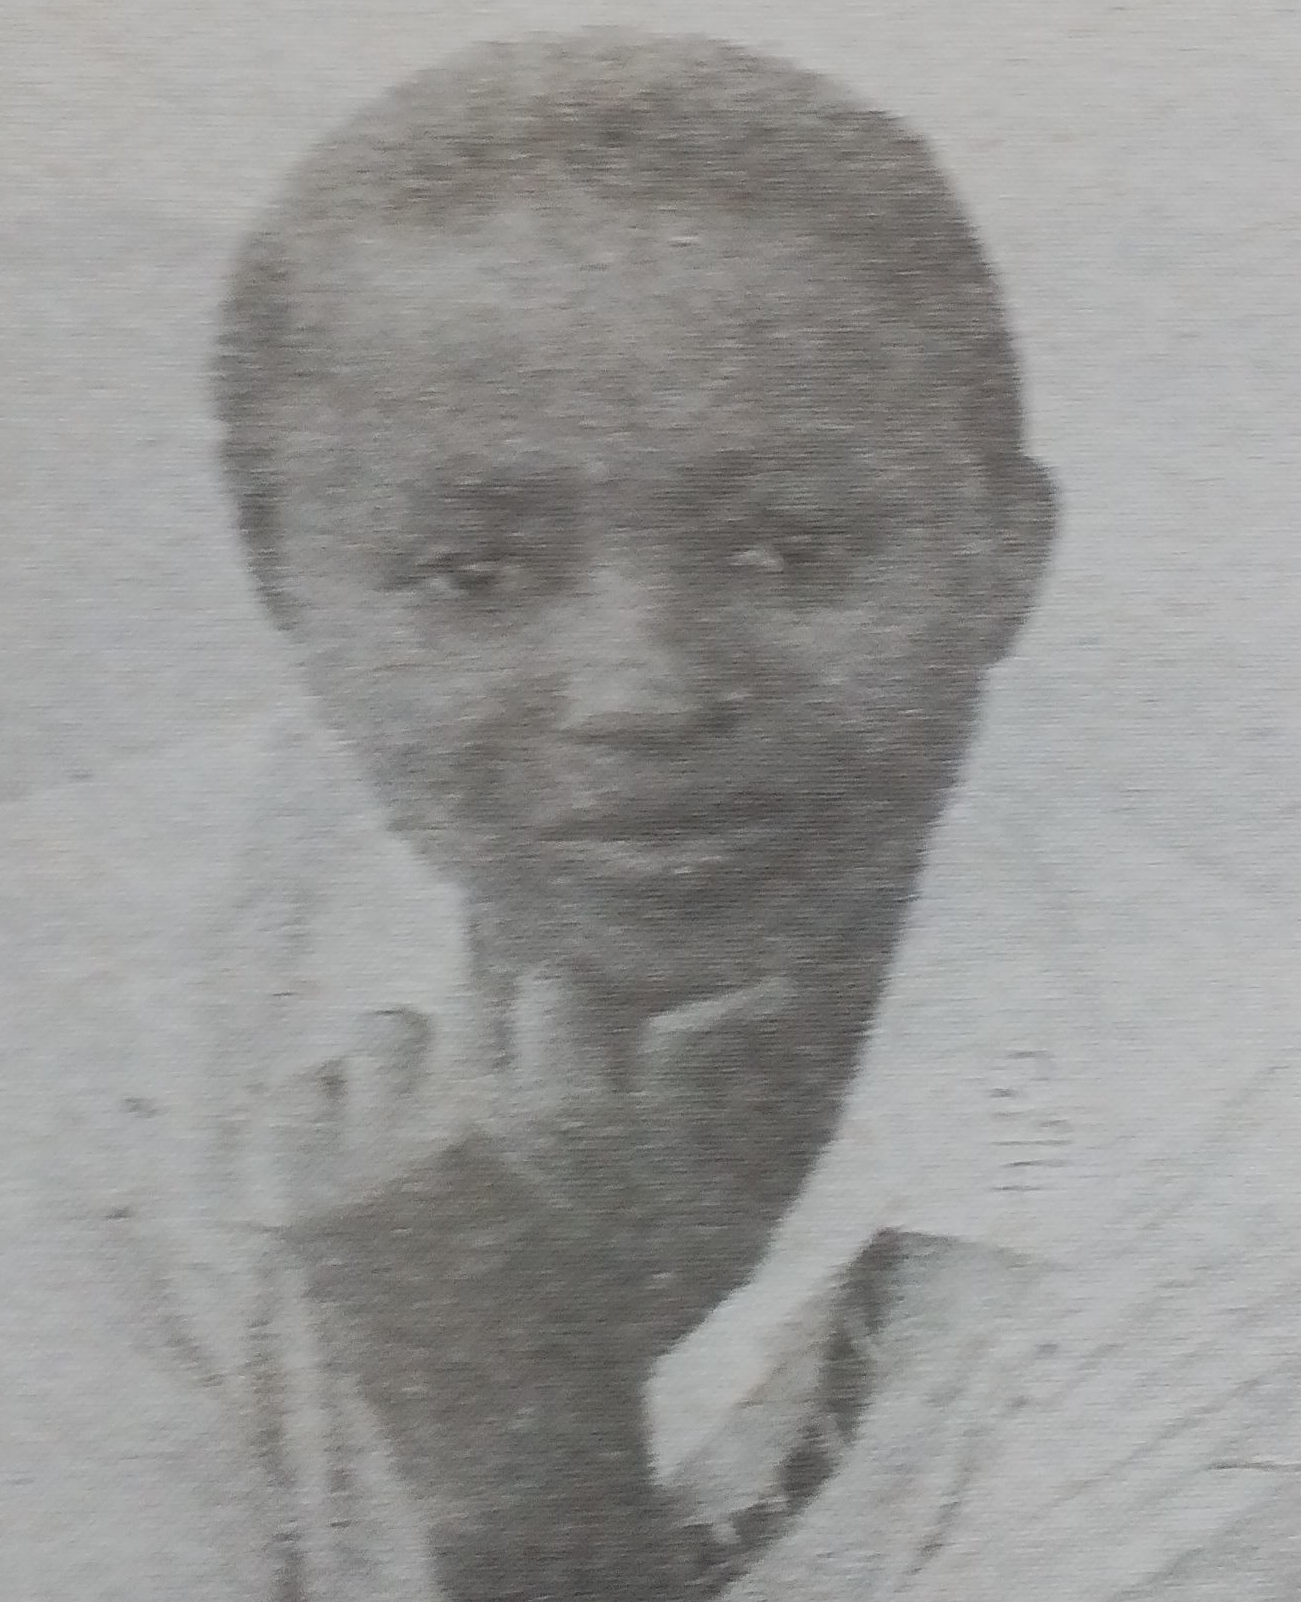 Obituary Image of Esther Mutinda Abel